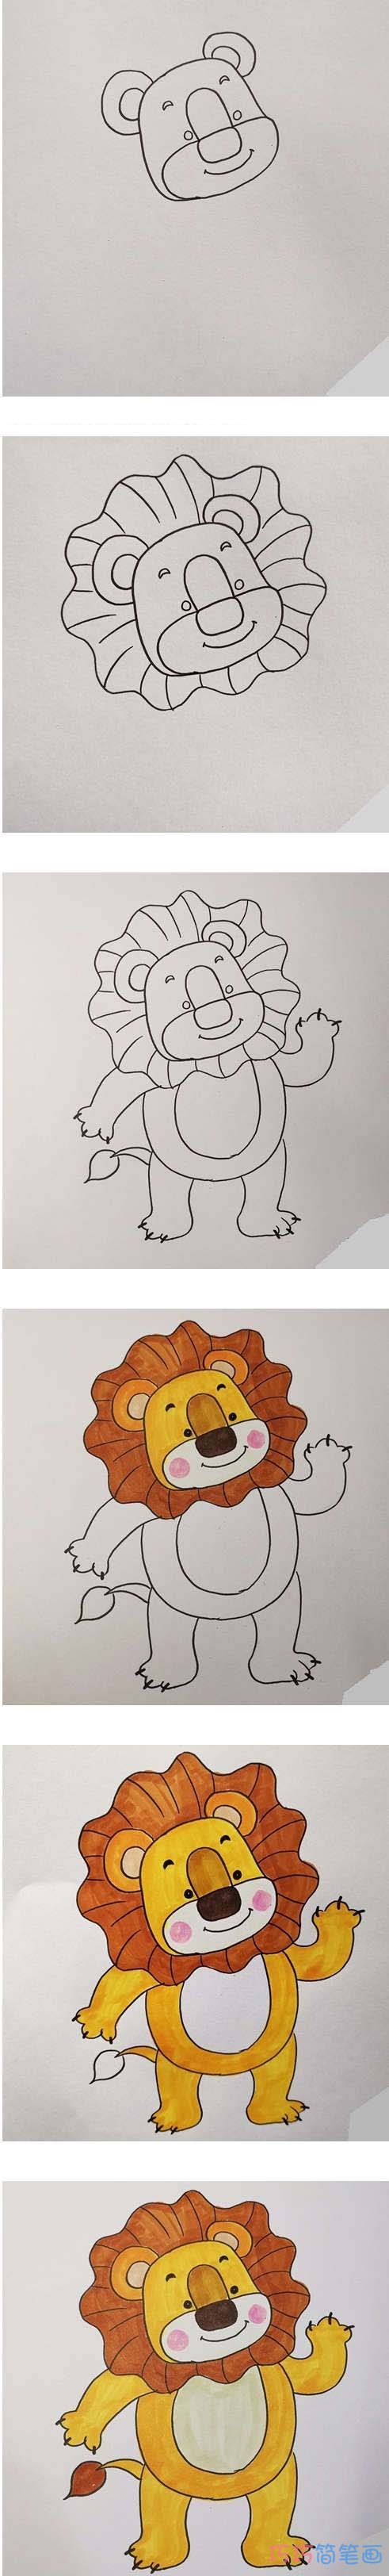 卡通狮子简笔画画法步骤教程涂色